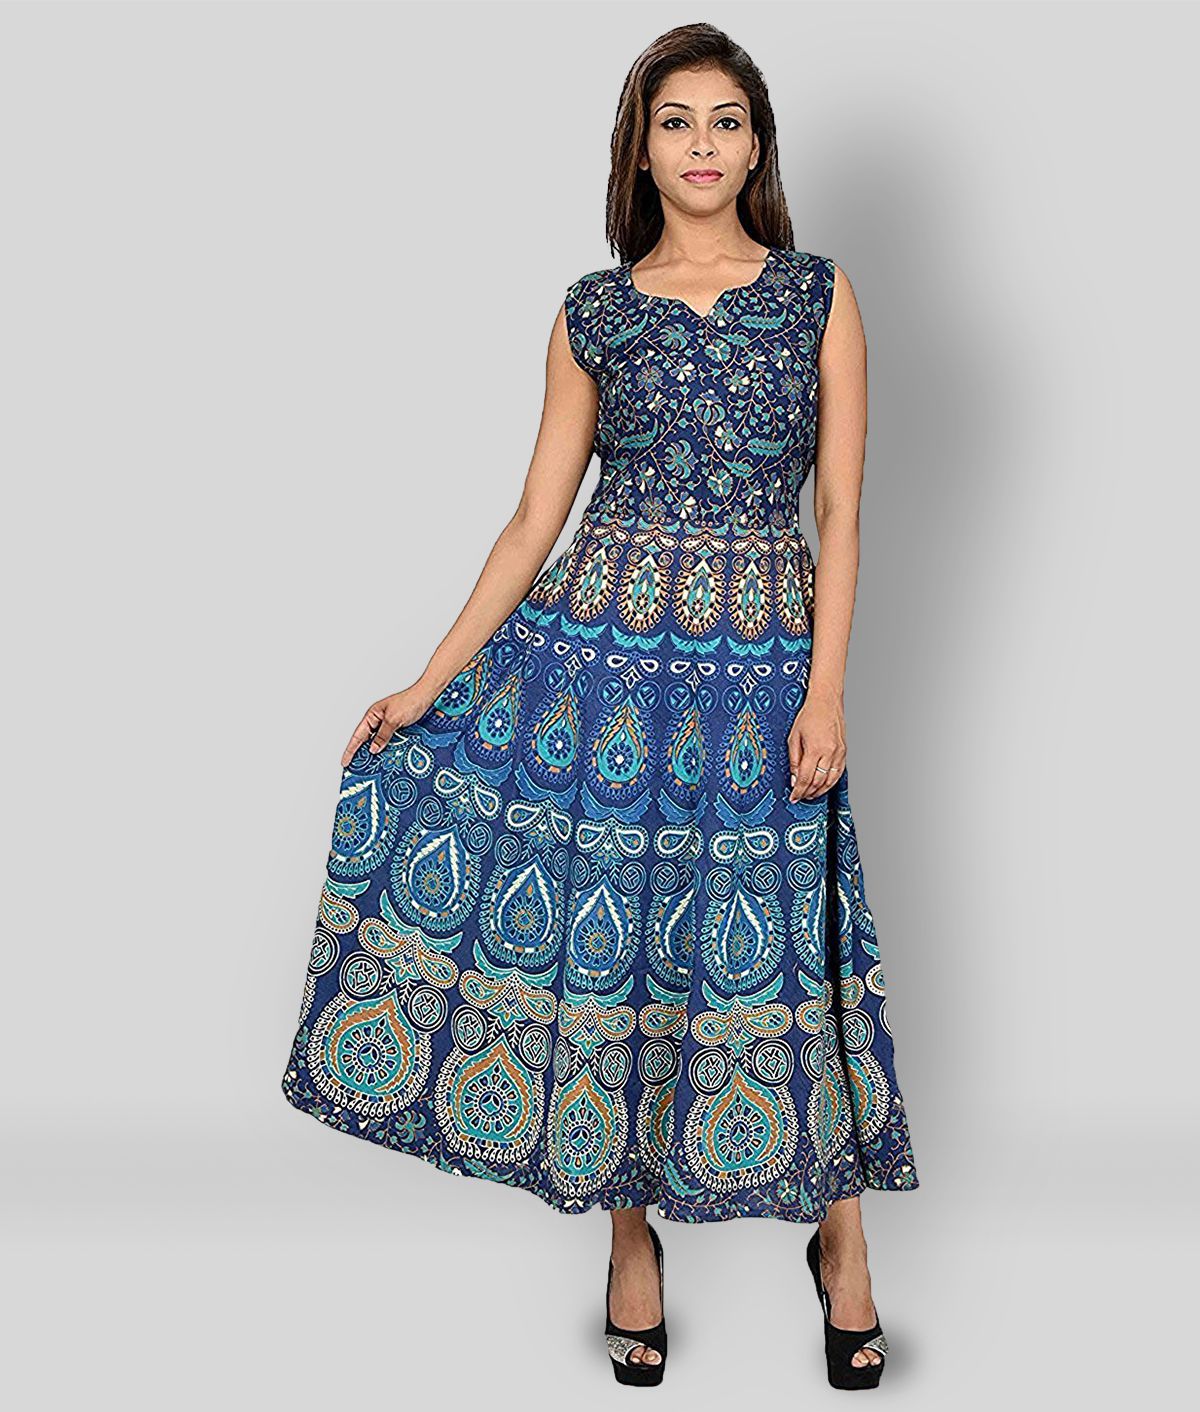     			Rangun - Multicolor Cotton Blend Women's A- line Dress ( Pack of 1 )